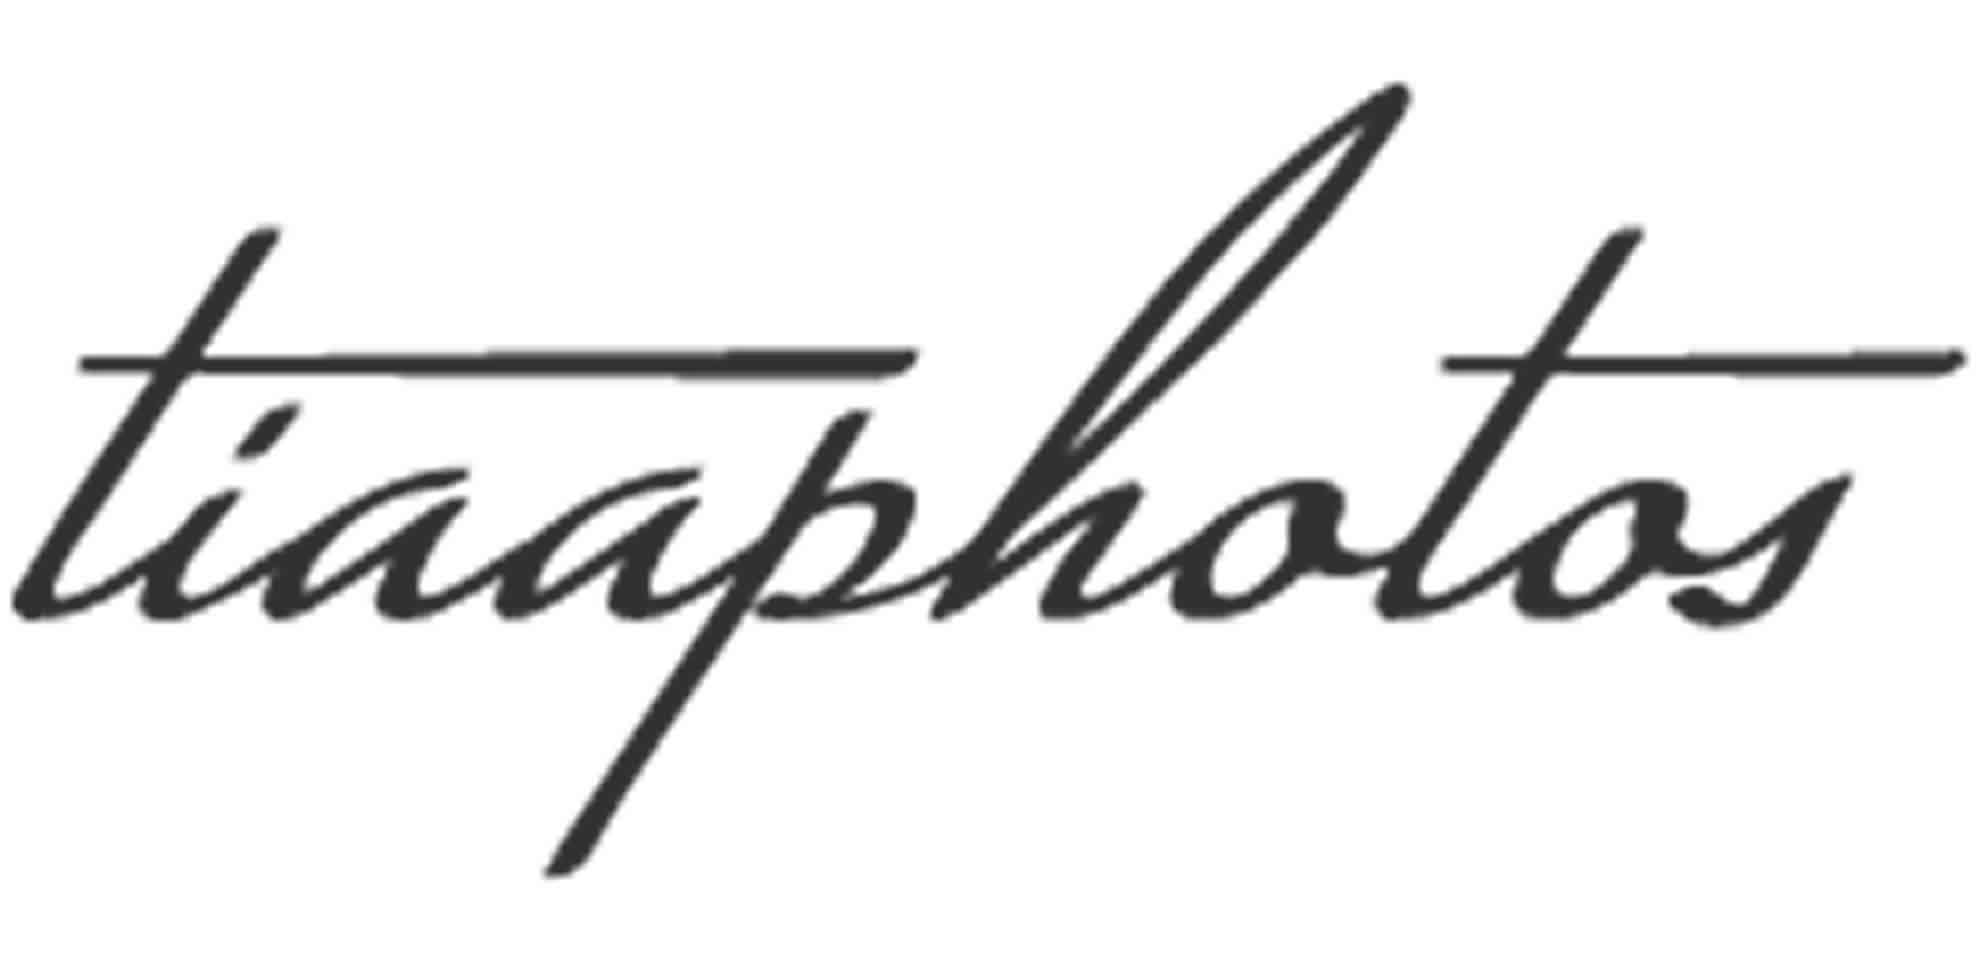 TIAAPHOTOS